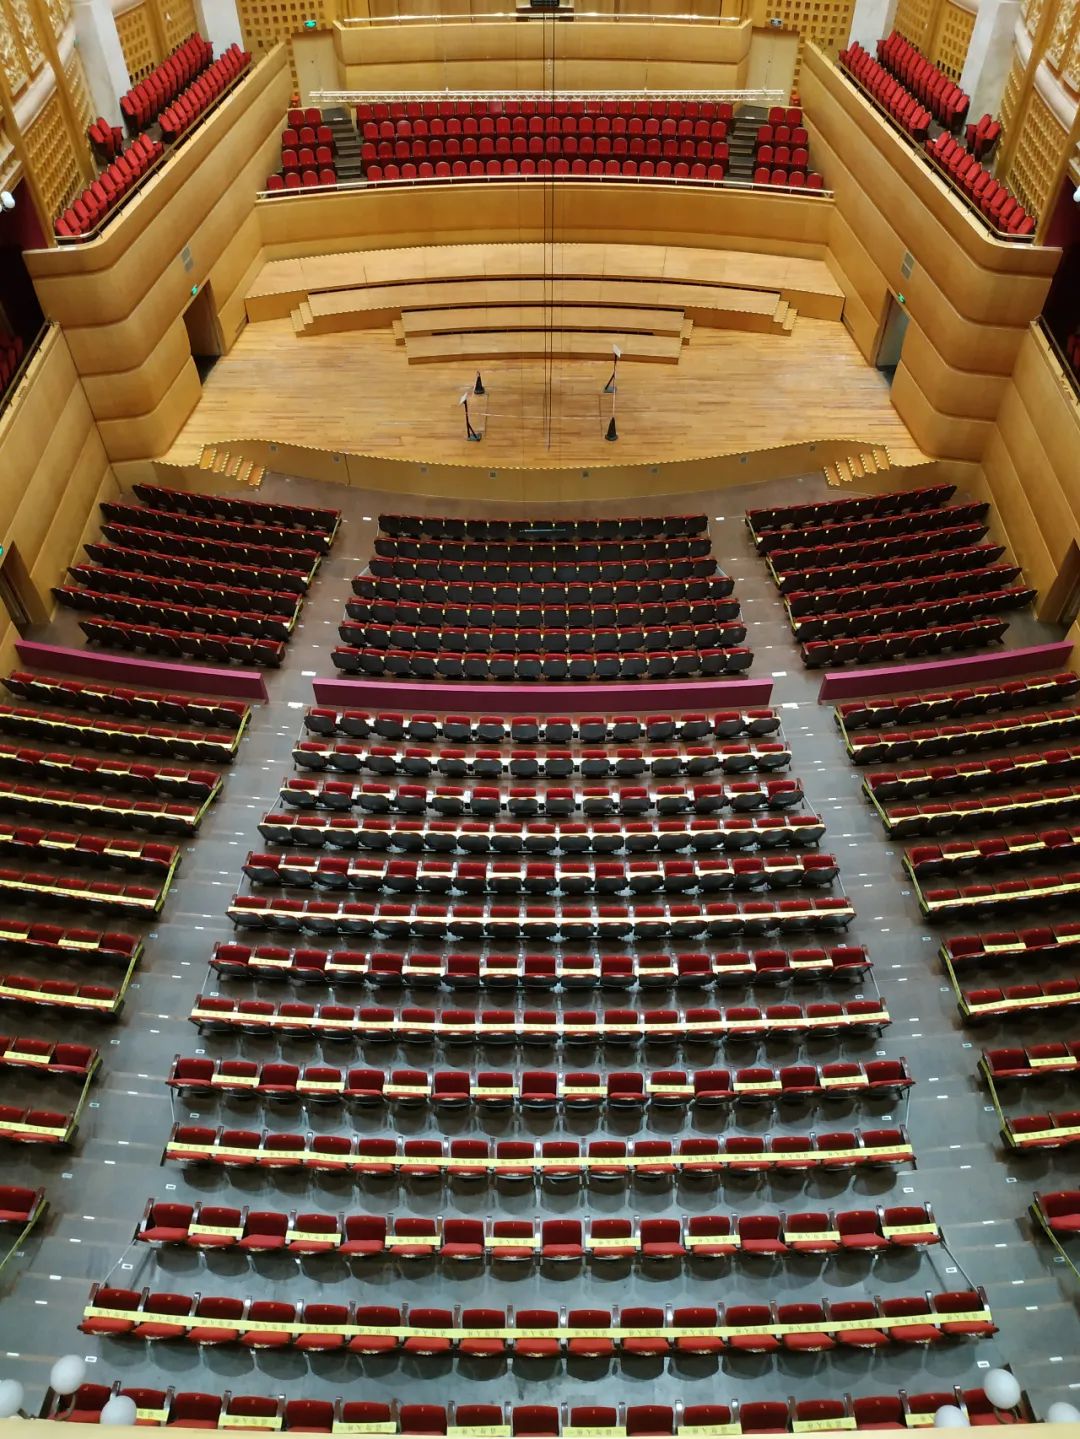 就在明天!阔别166天,武汉琴台音乐厅正式恢复演出!